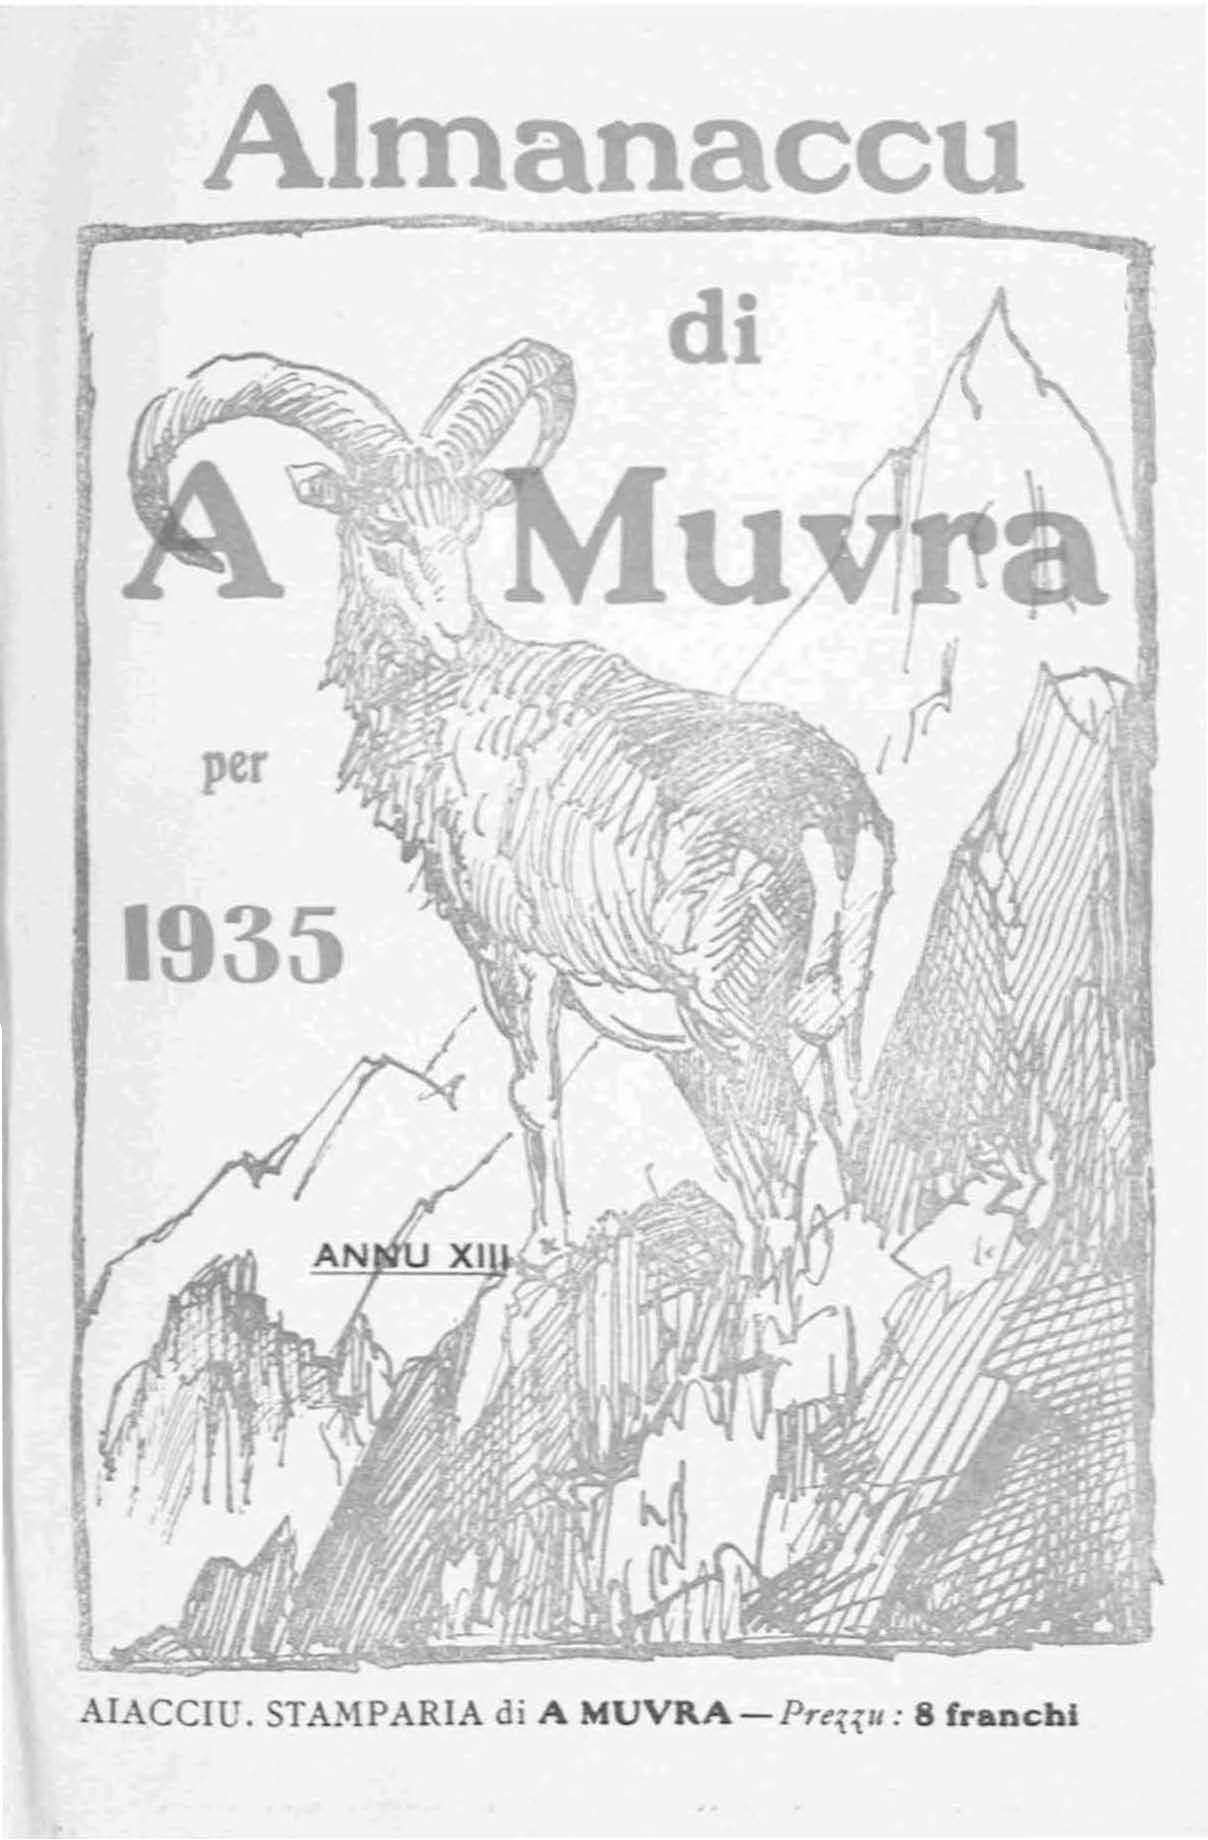 >Almanaccu di a Muvra 1935